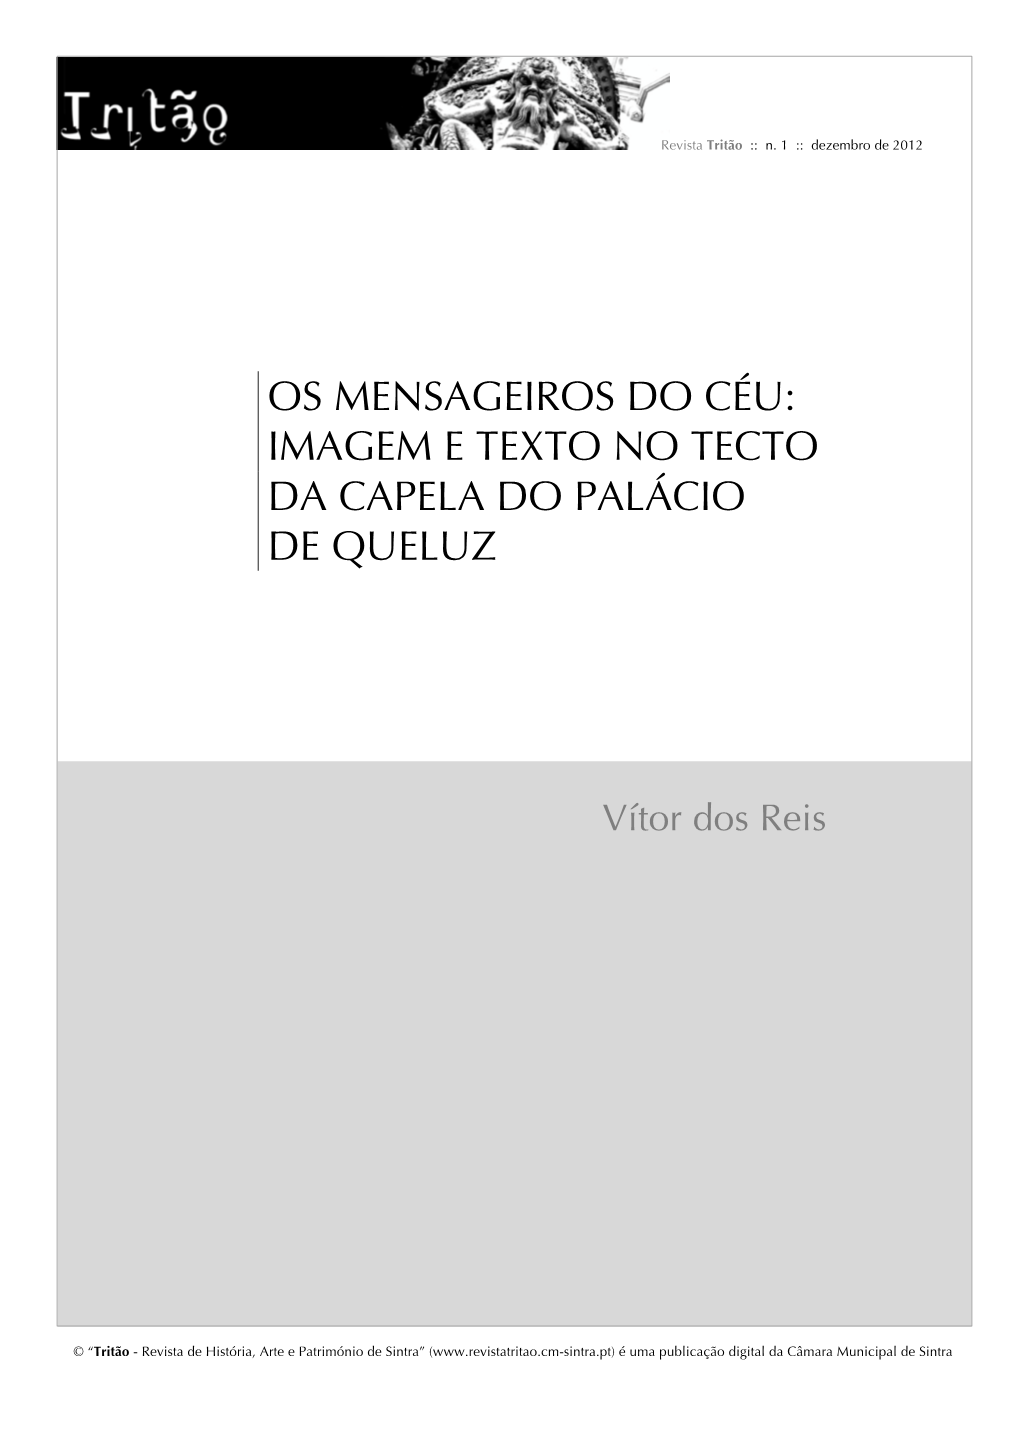 Os Mensageiros Do Céu: Imagem E Texto No Tecto Da Capela Do Palácio De Queluz